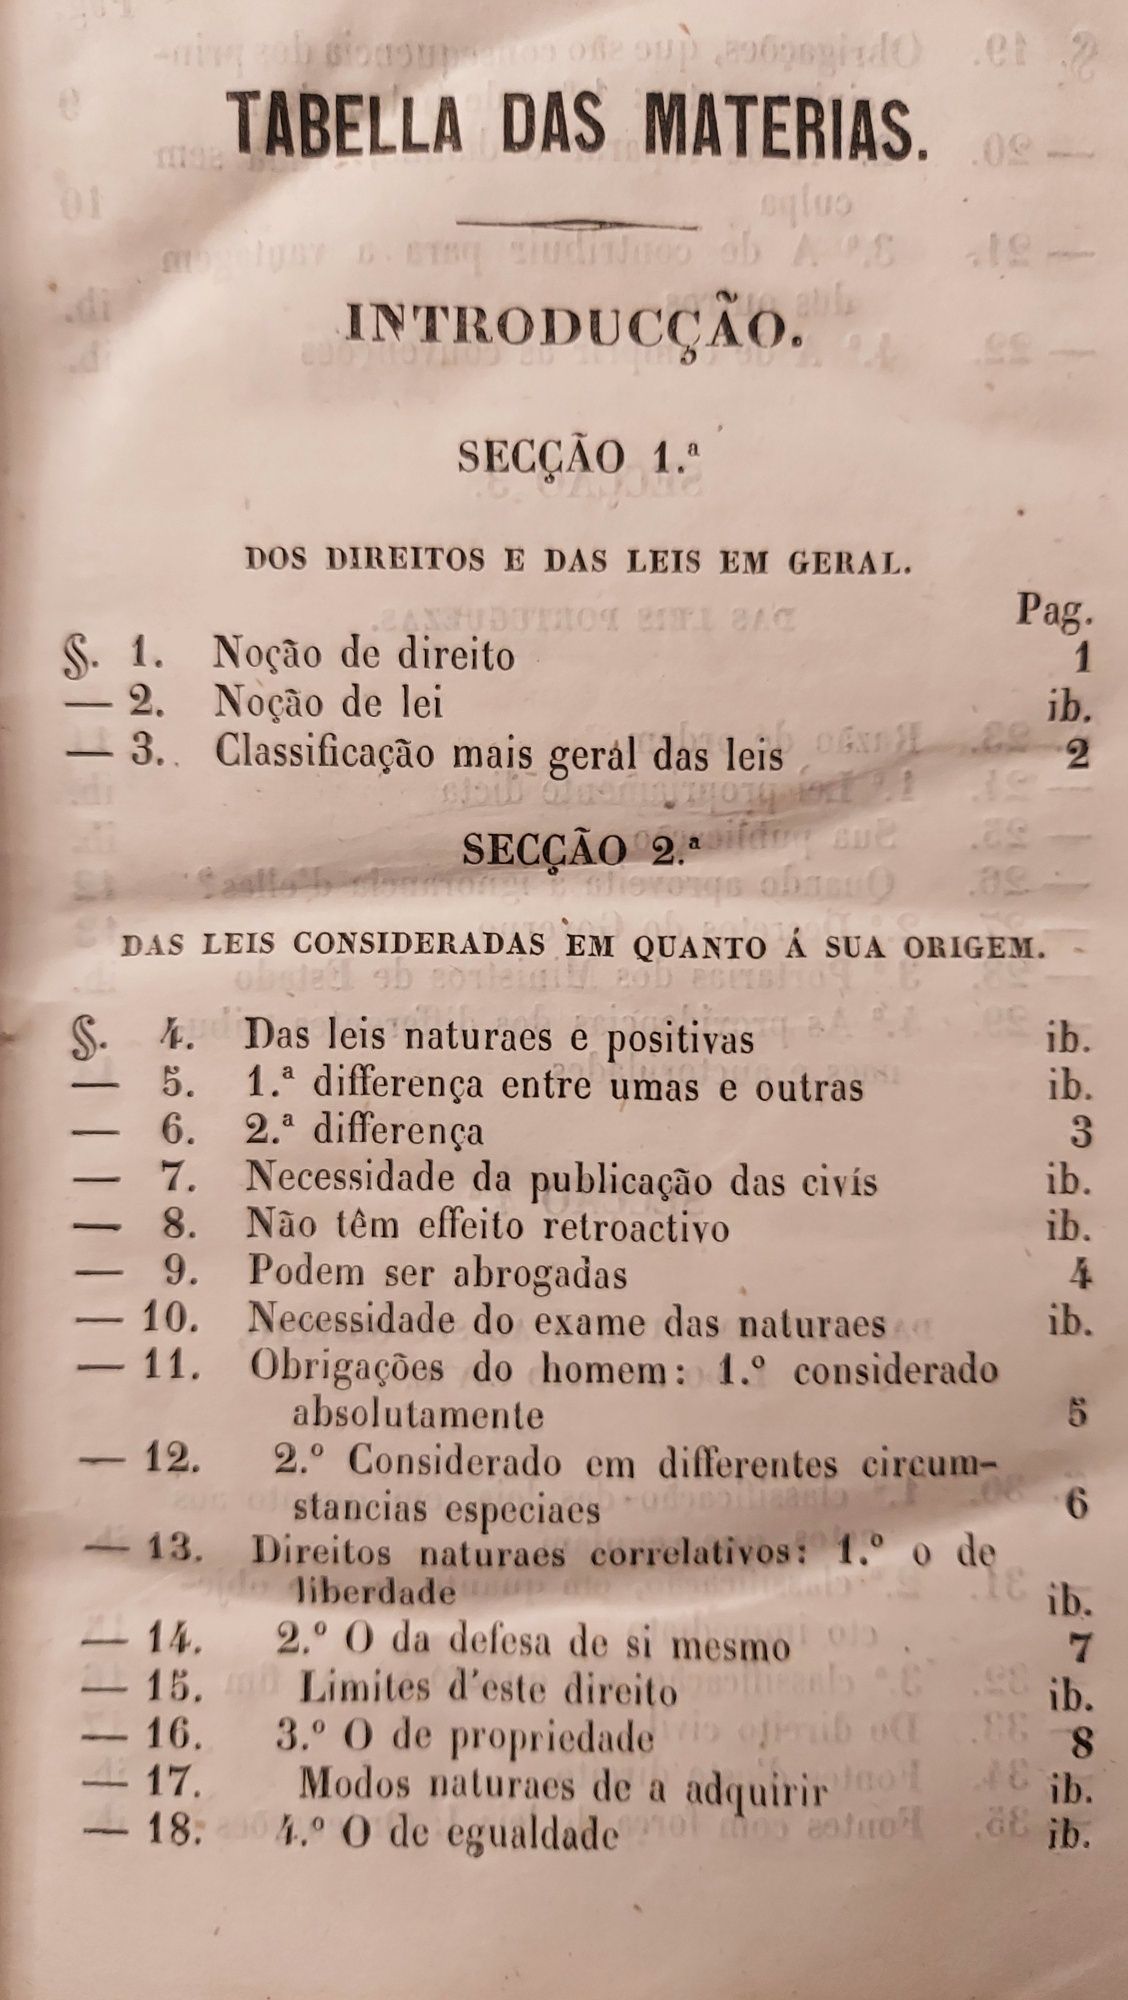 Instituições de Direito Civil Portuguez, 4ª edição, Coimbra 1857